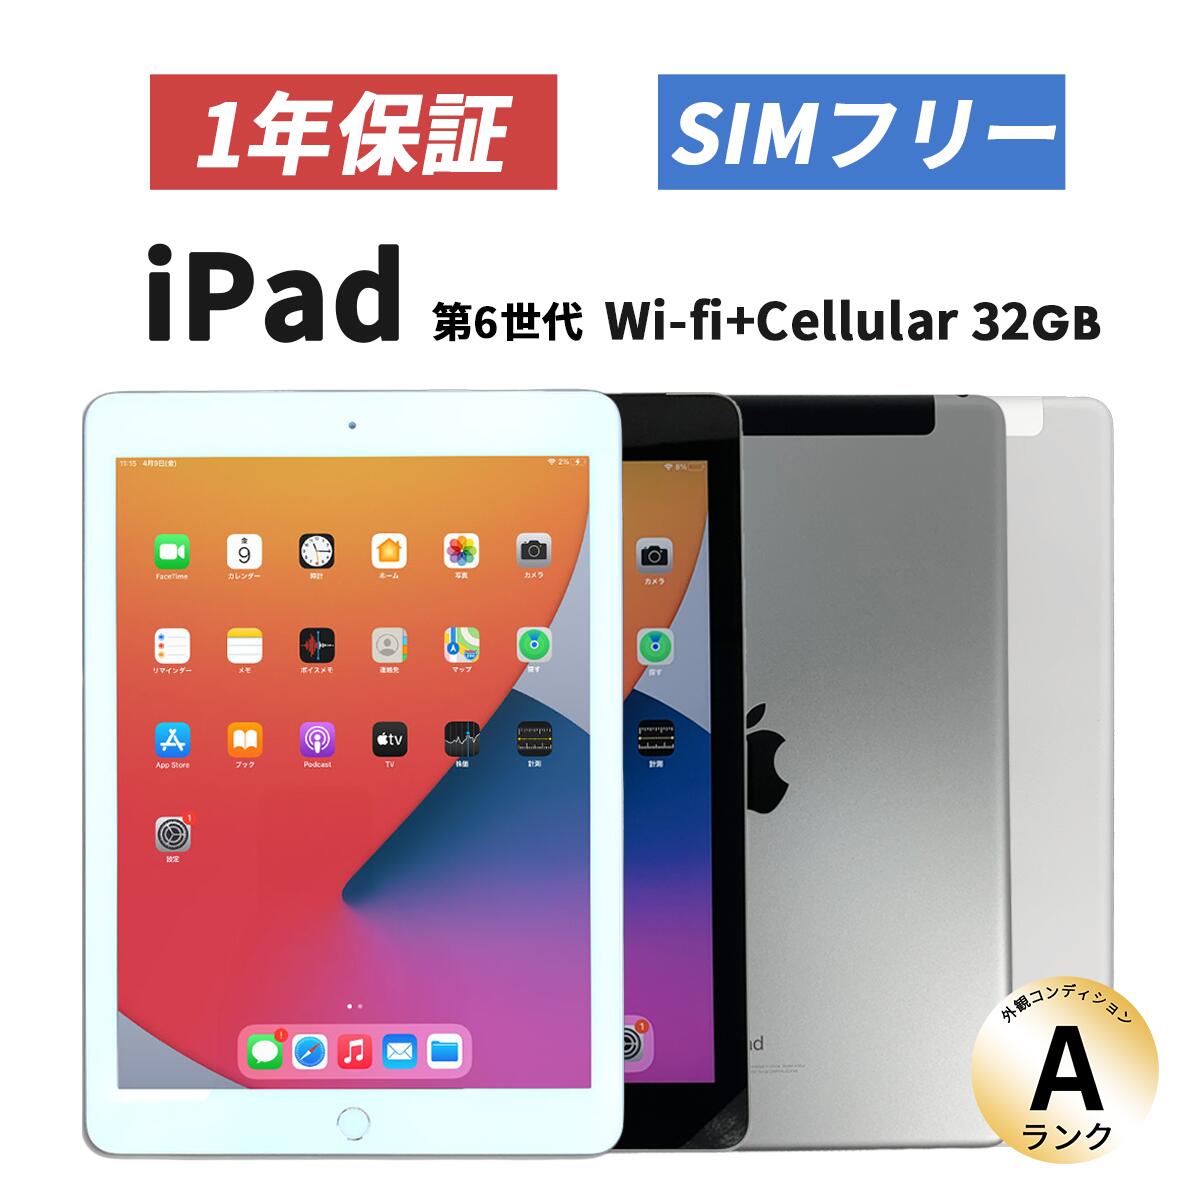  iPad 第6世代 2018年モデル Wifi cellular 32GB Silver SIMフリー ネットワーク利用制限- MR6P2J A中古 整備済品  |SIMフリー 本体アイパッド あいぱっと アイパット アップル apple  中古iPad